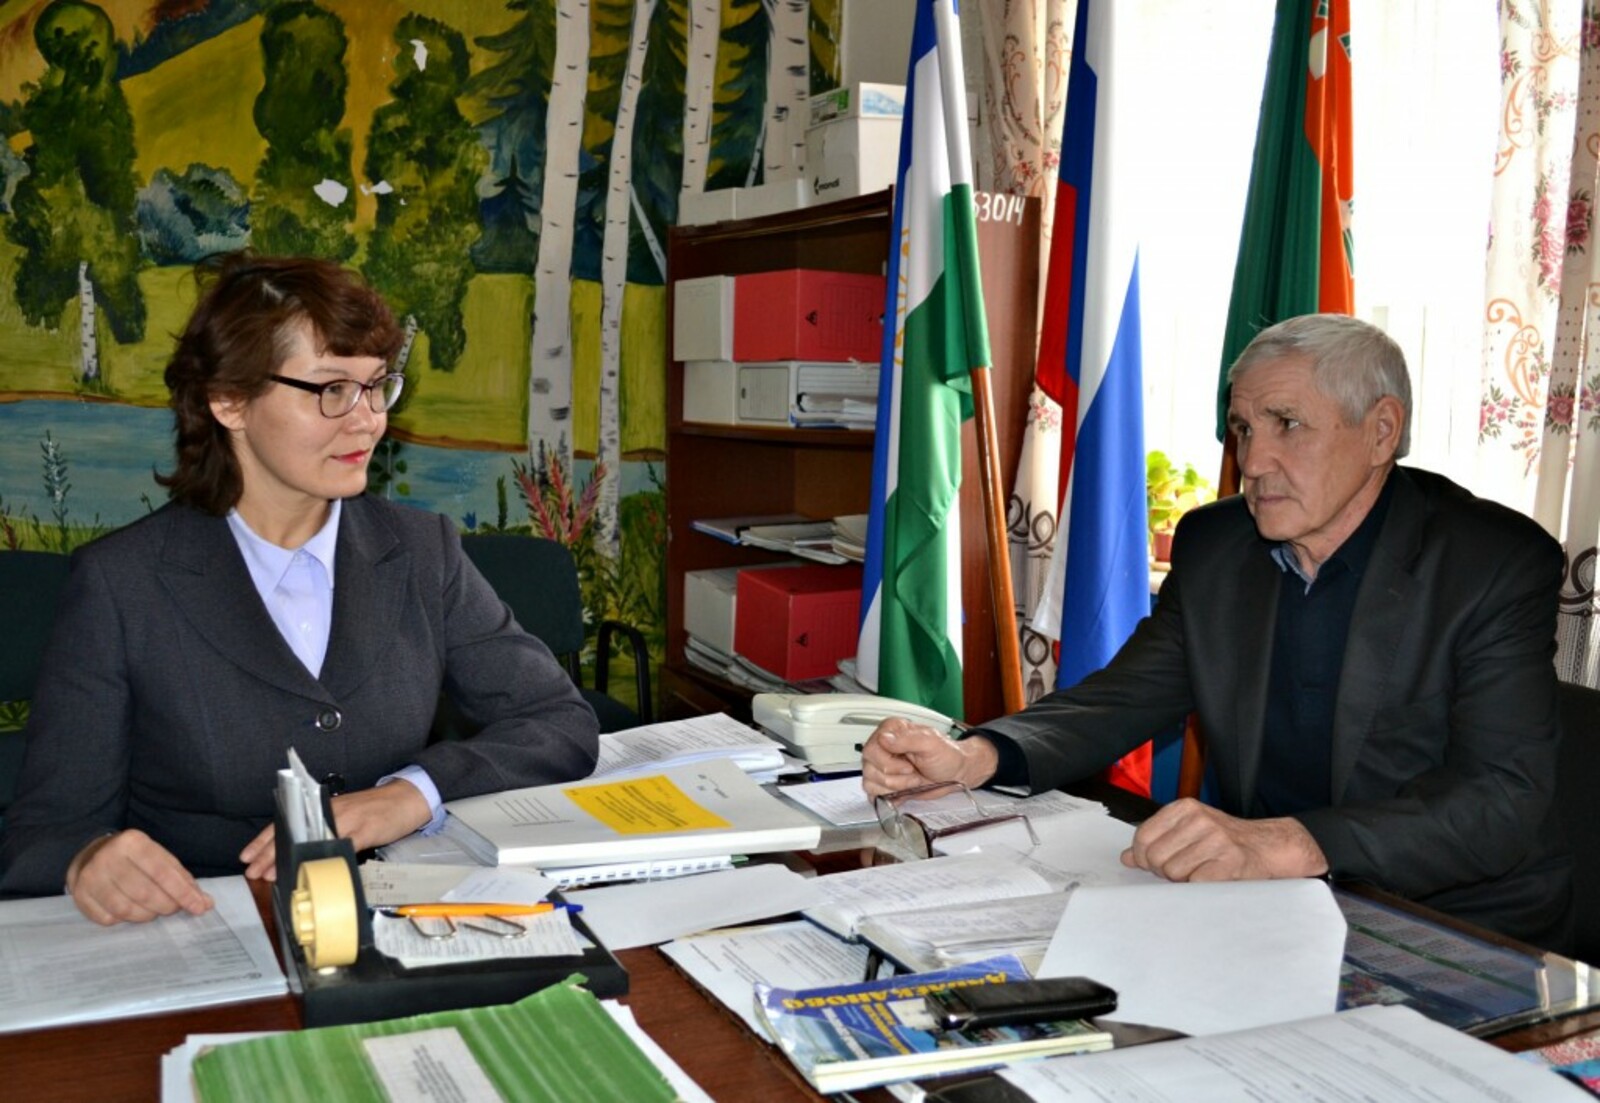 Глава сельского поселения М.Г. Маликов и управляющий делами Л.З. Файзрахманова решают повседневные задачи.